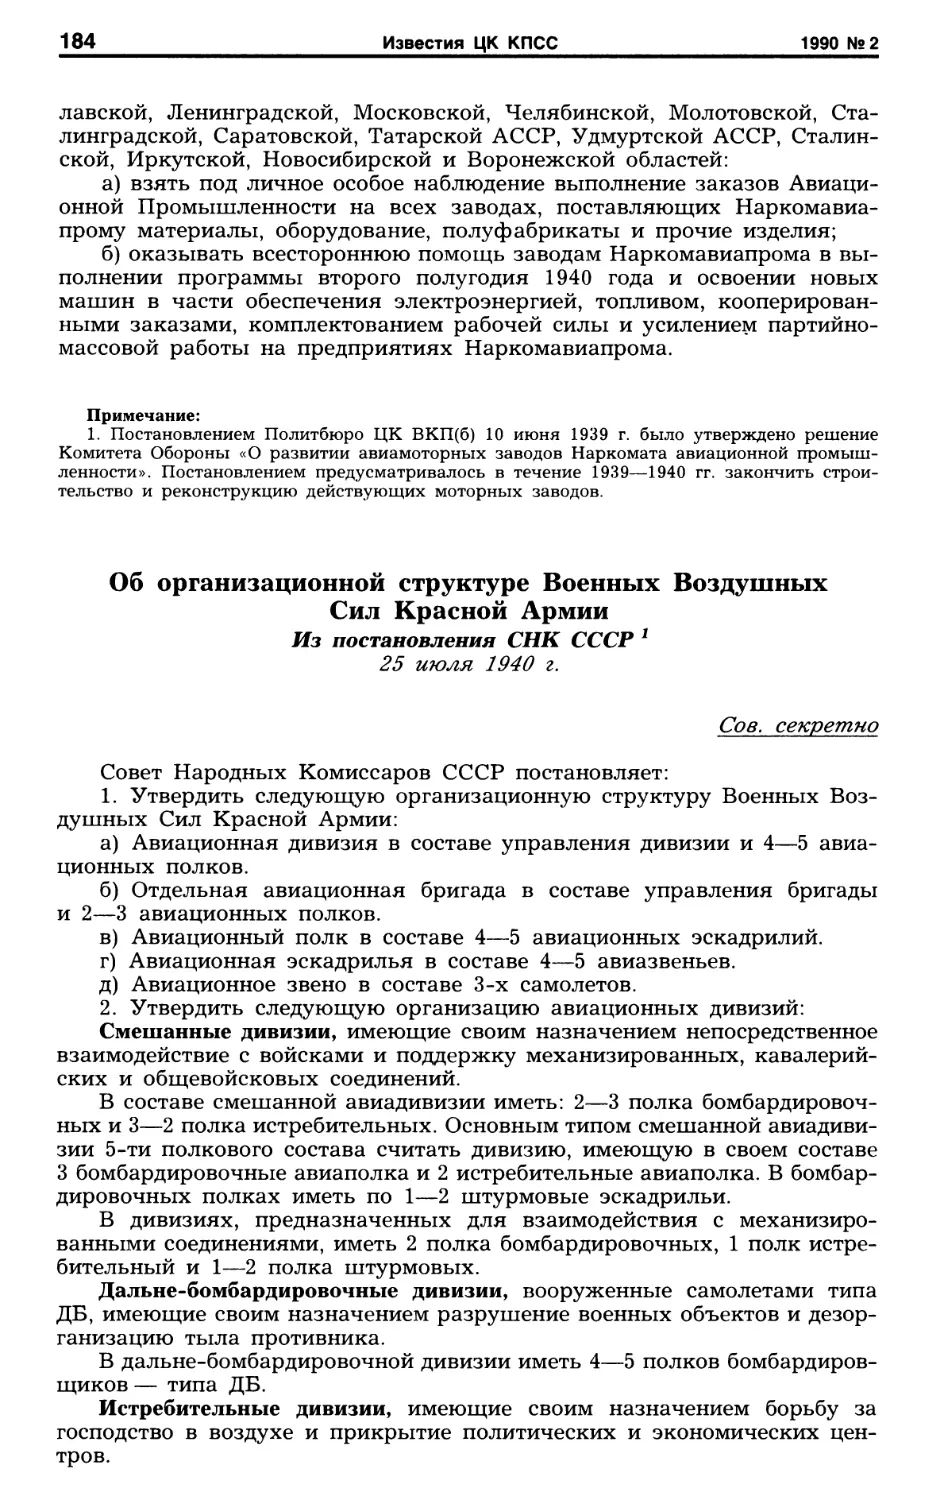 Об организационной структуре Военных Воздушных Сил Красной Армии. 25 июля 1940 г